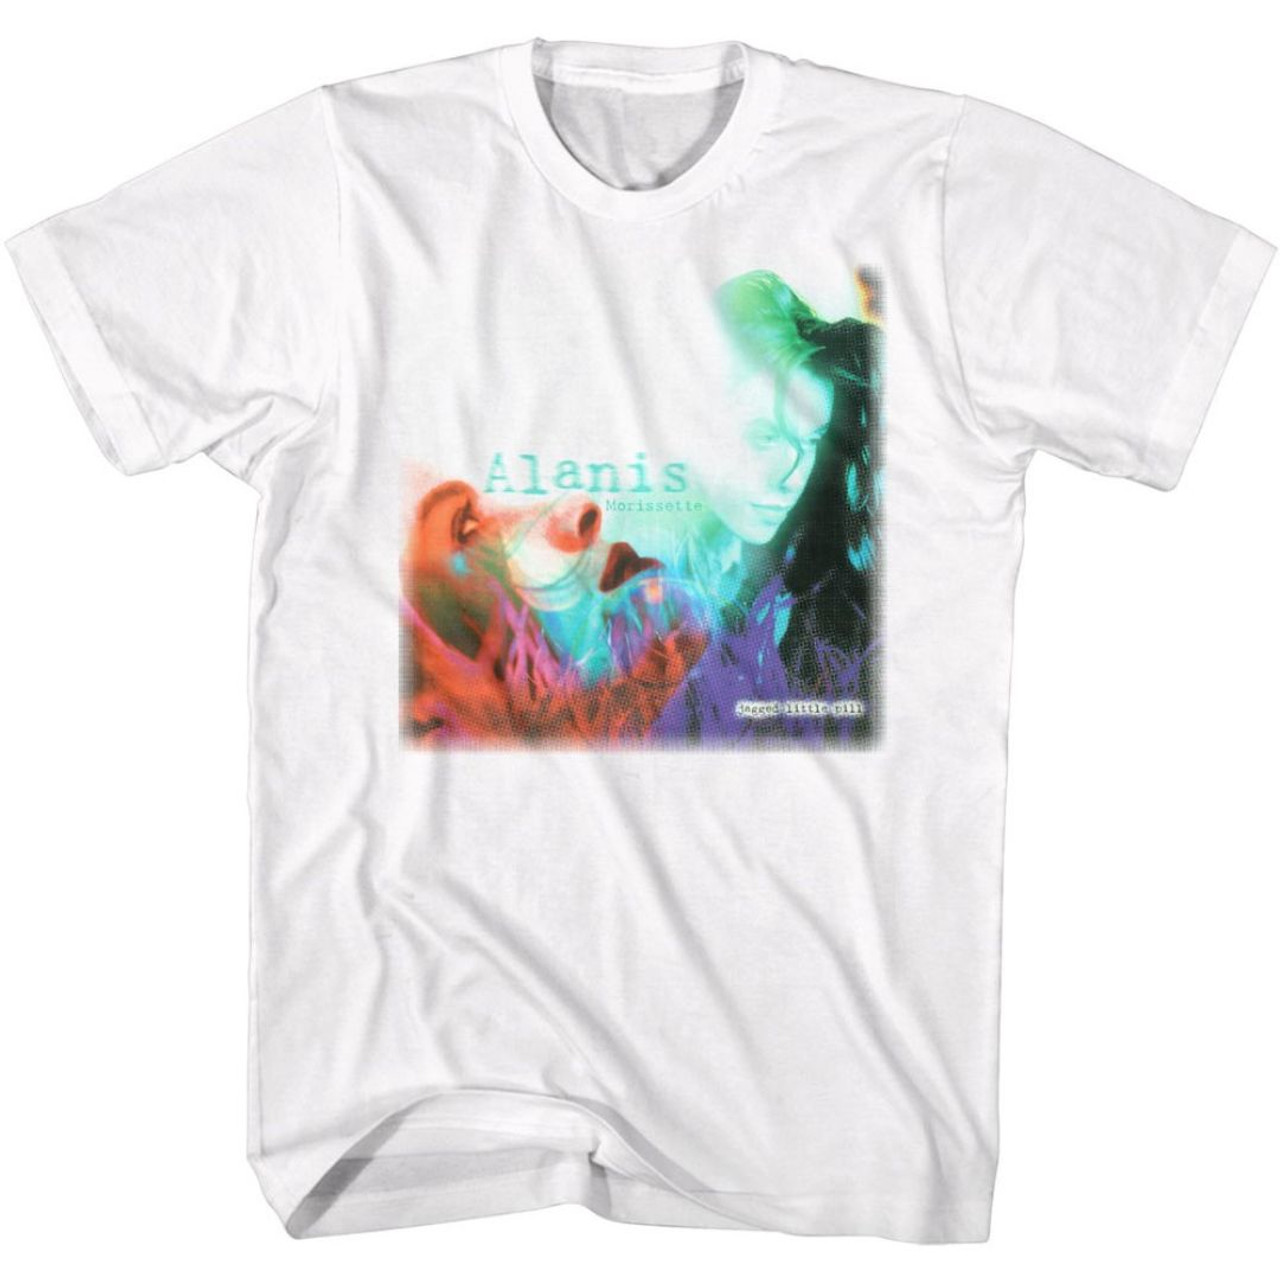 Alanis Morissette Jagged Little Pill Album Artwork T-shirt